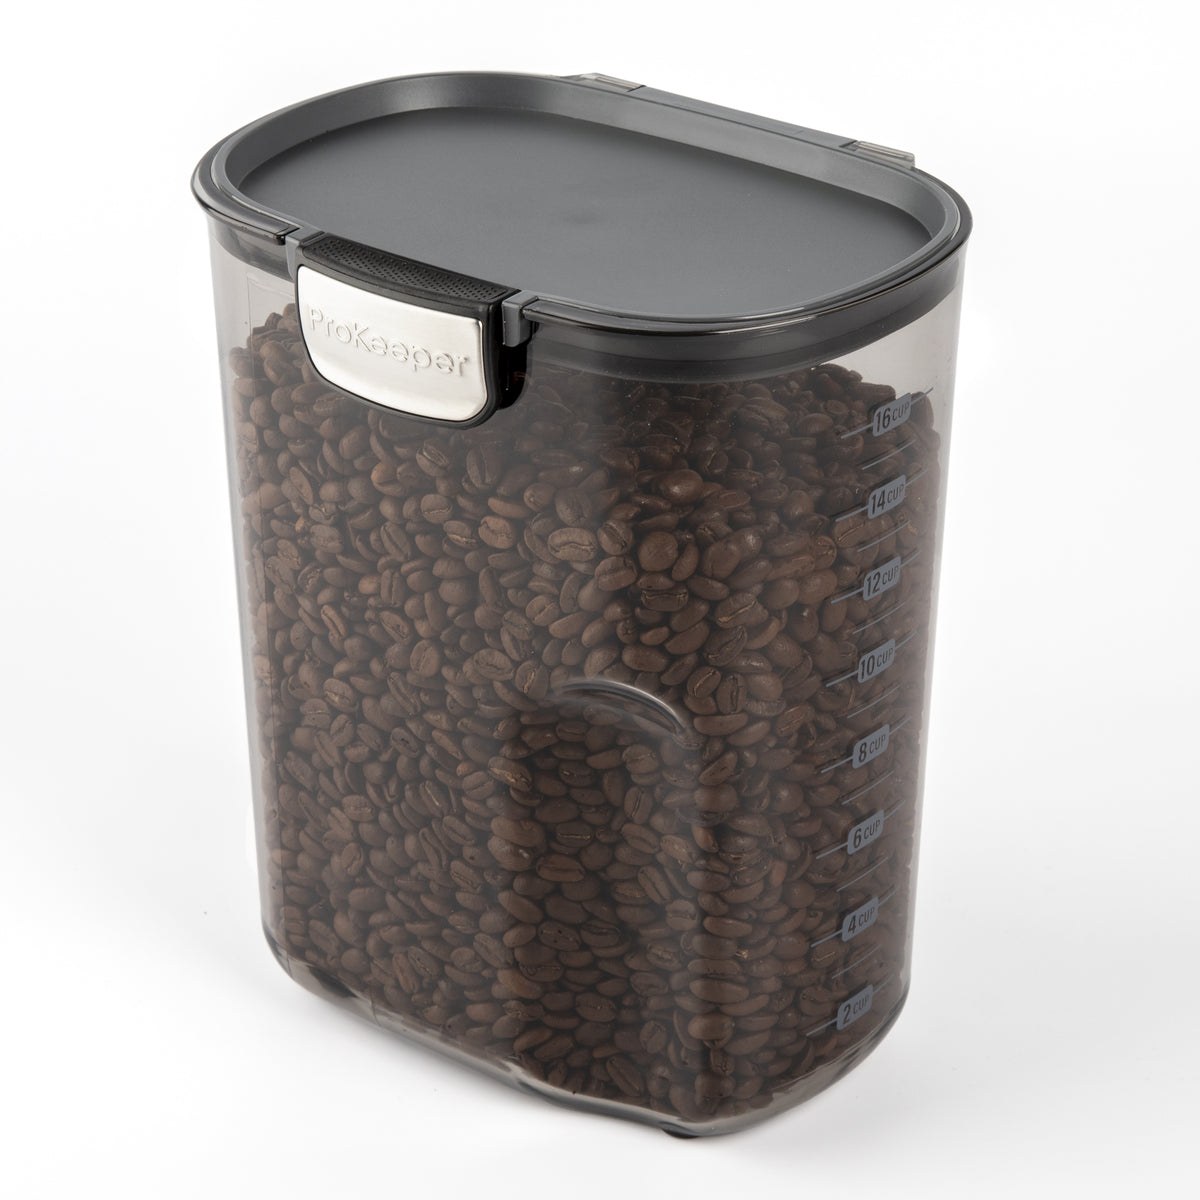 Contenedor de café 3.7 litros ProKeeper+